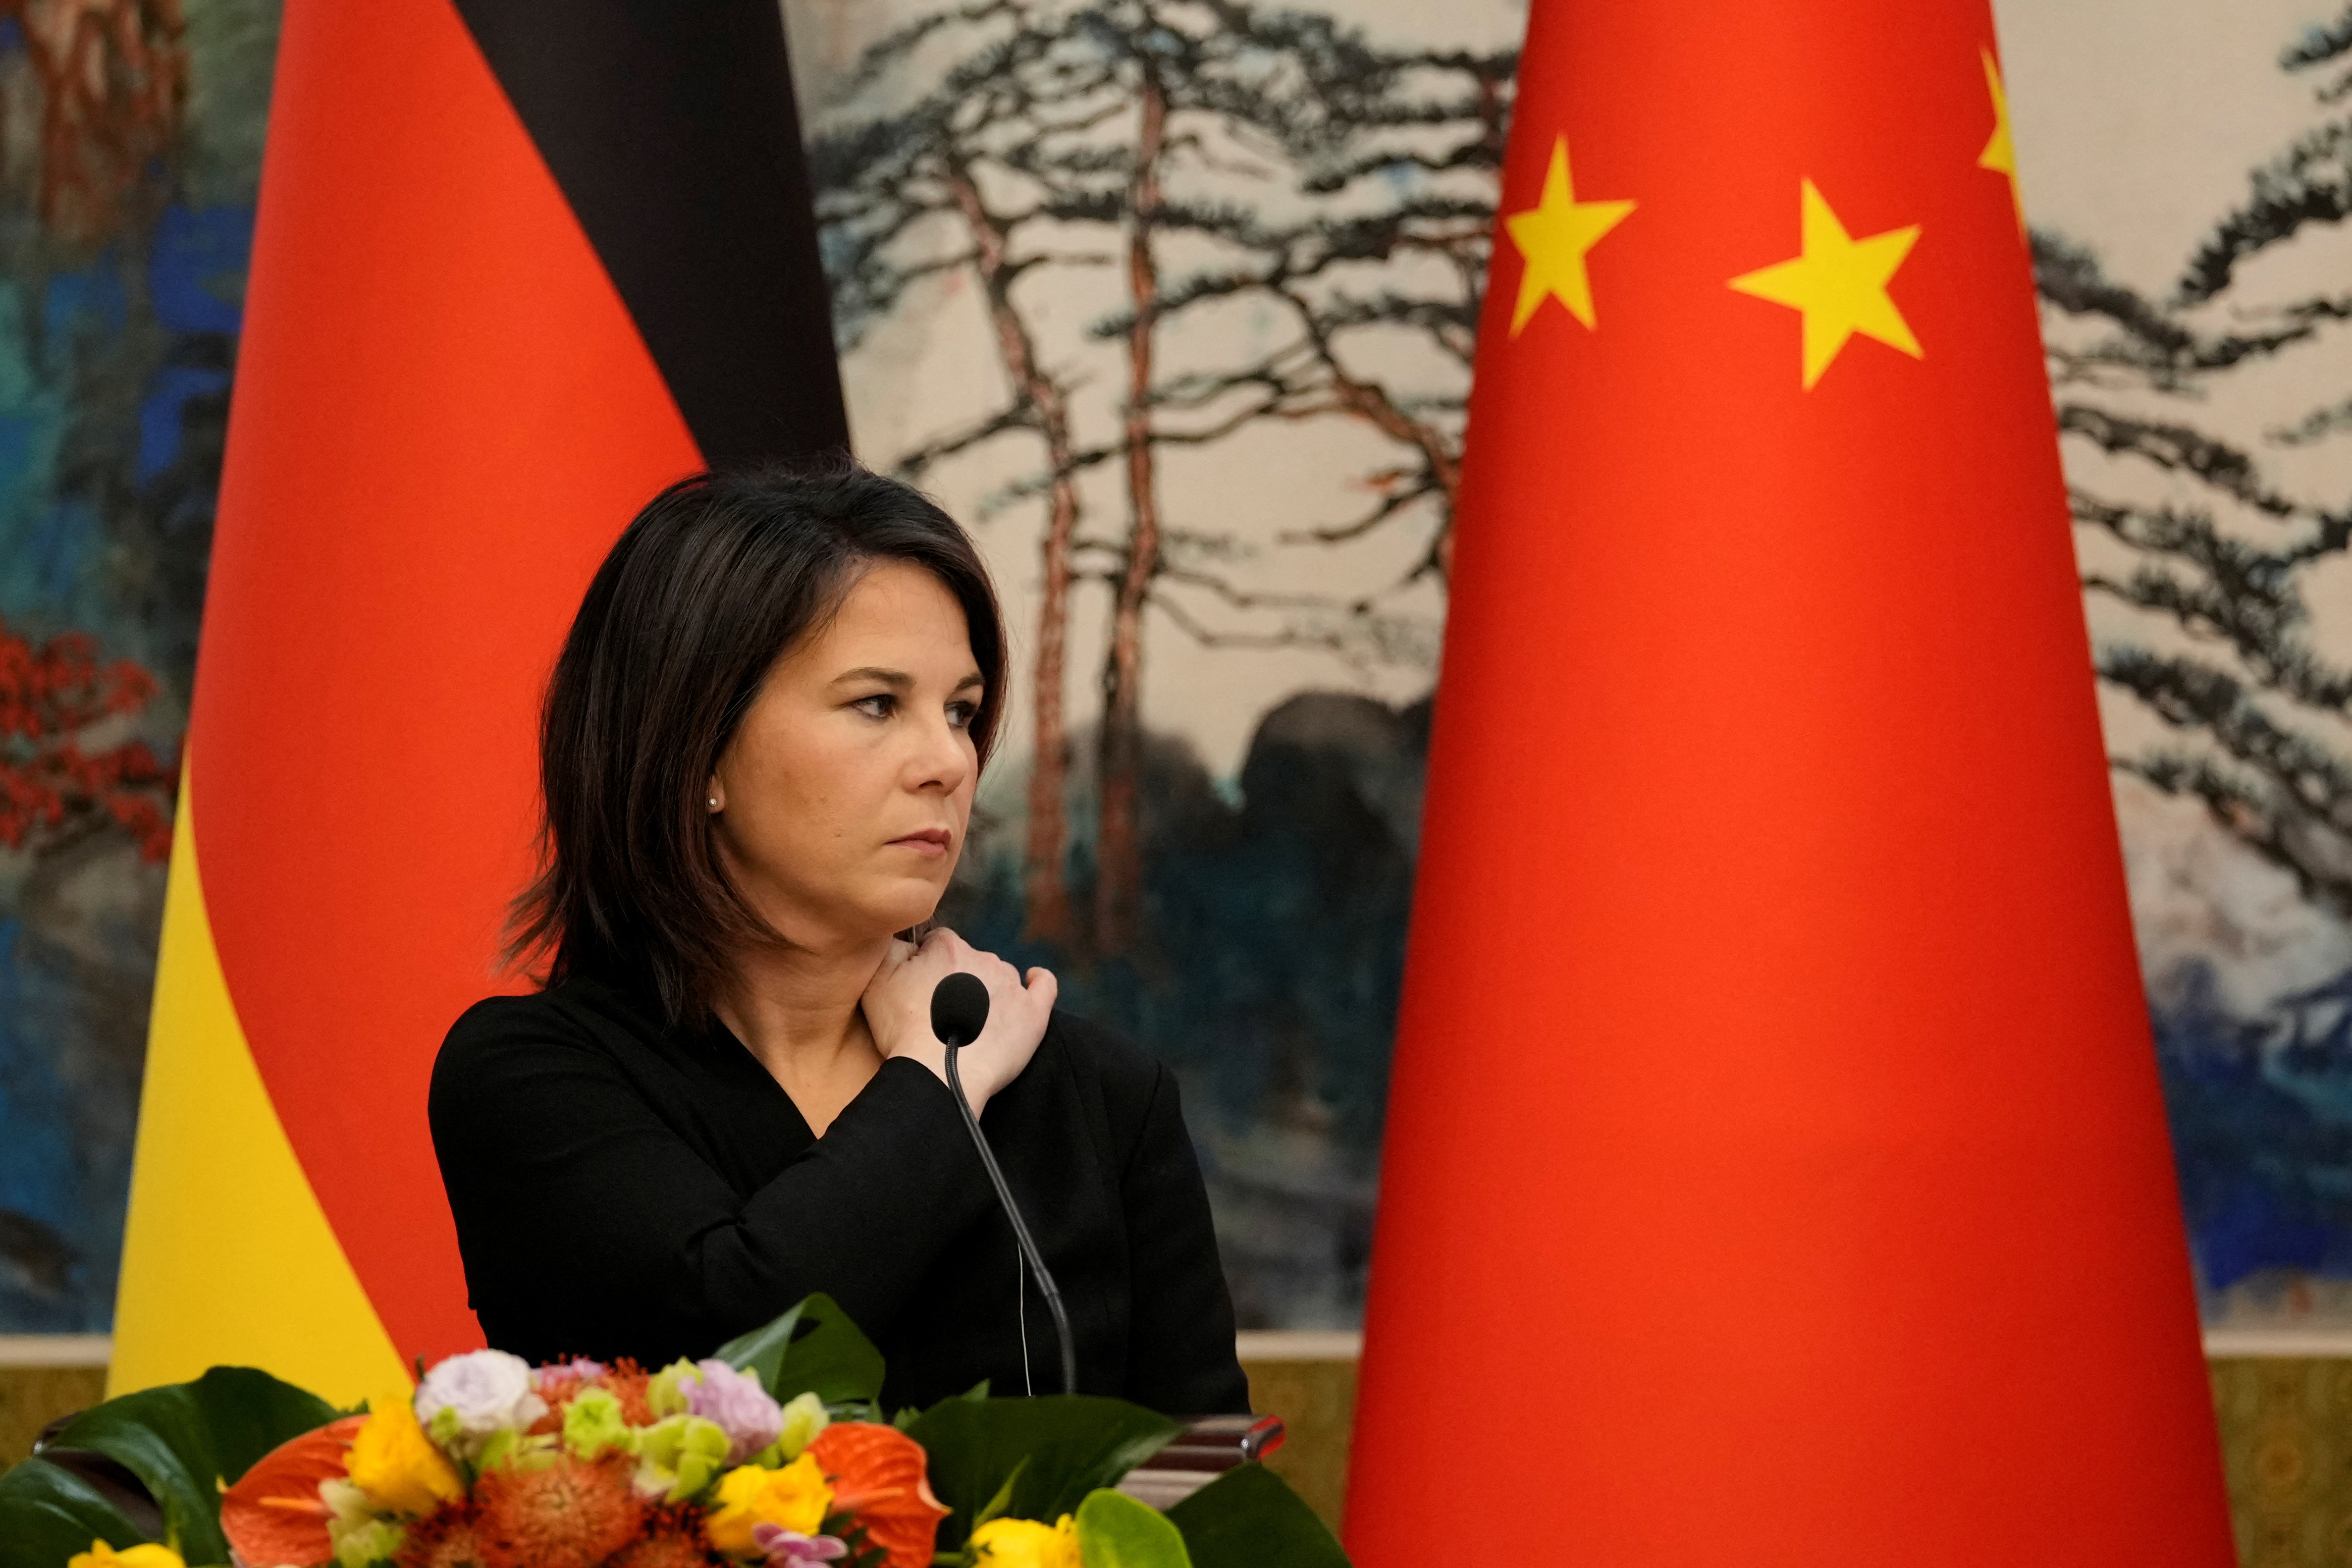 La ministra de Asuntos Exteriores de Alemania, Annalena Baerbock, le dijo en la cara a su par chino Qin Gang que no aceptarían un cambio de estatus en Taiwán (Reuters)